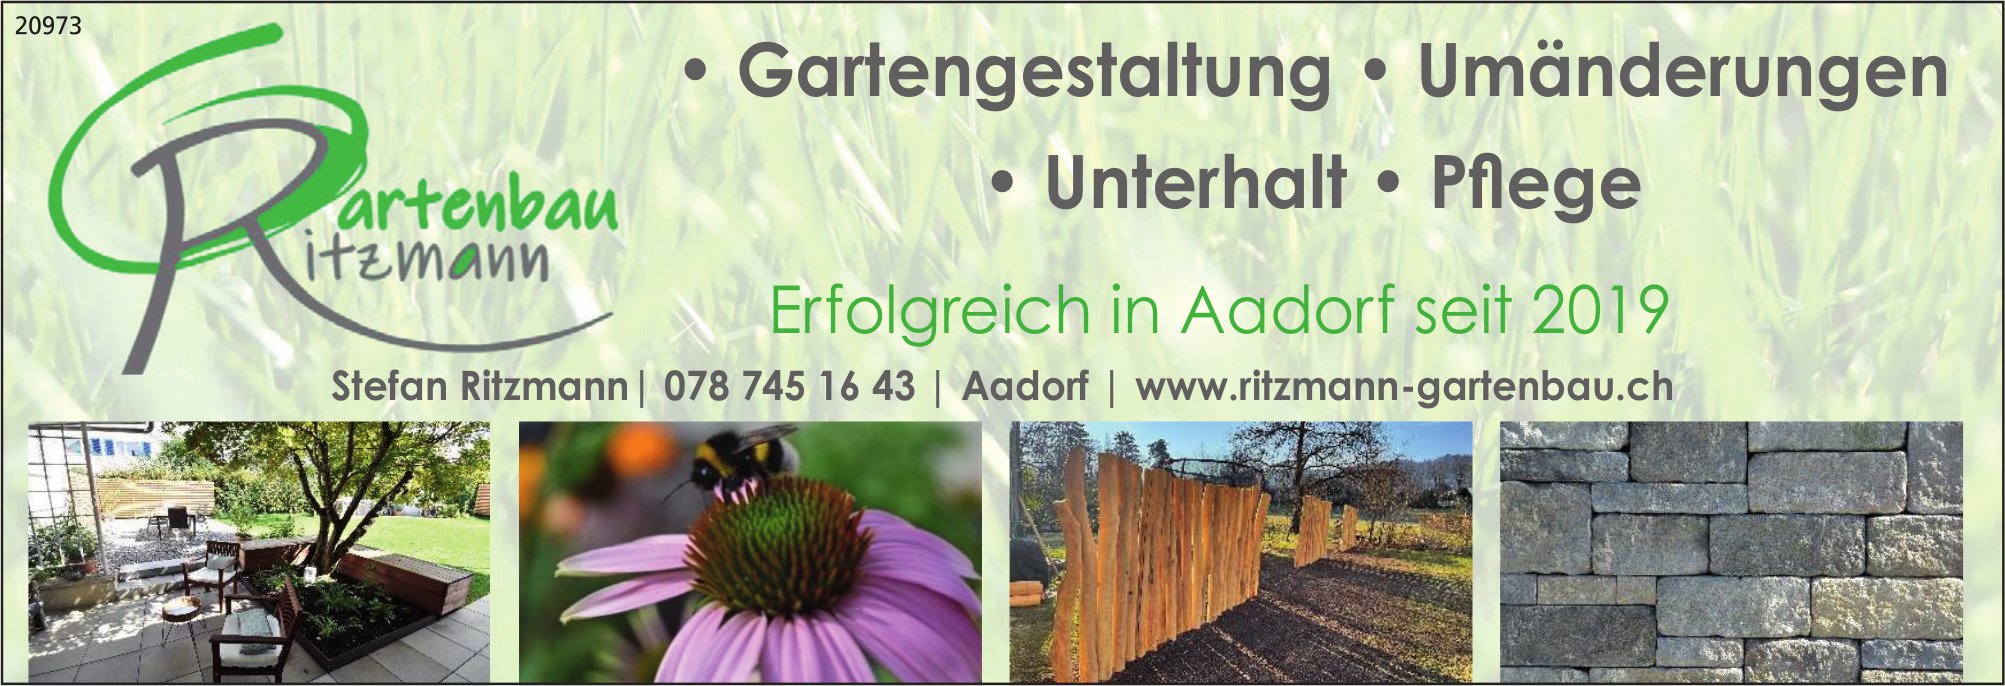 Gartenbau Ritzmann, Aadorf - Gartengestaltung, Umänderungen, Unterhalt,  Pflege